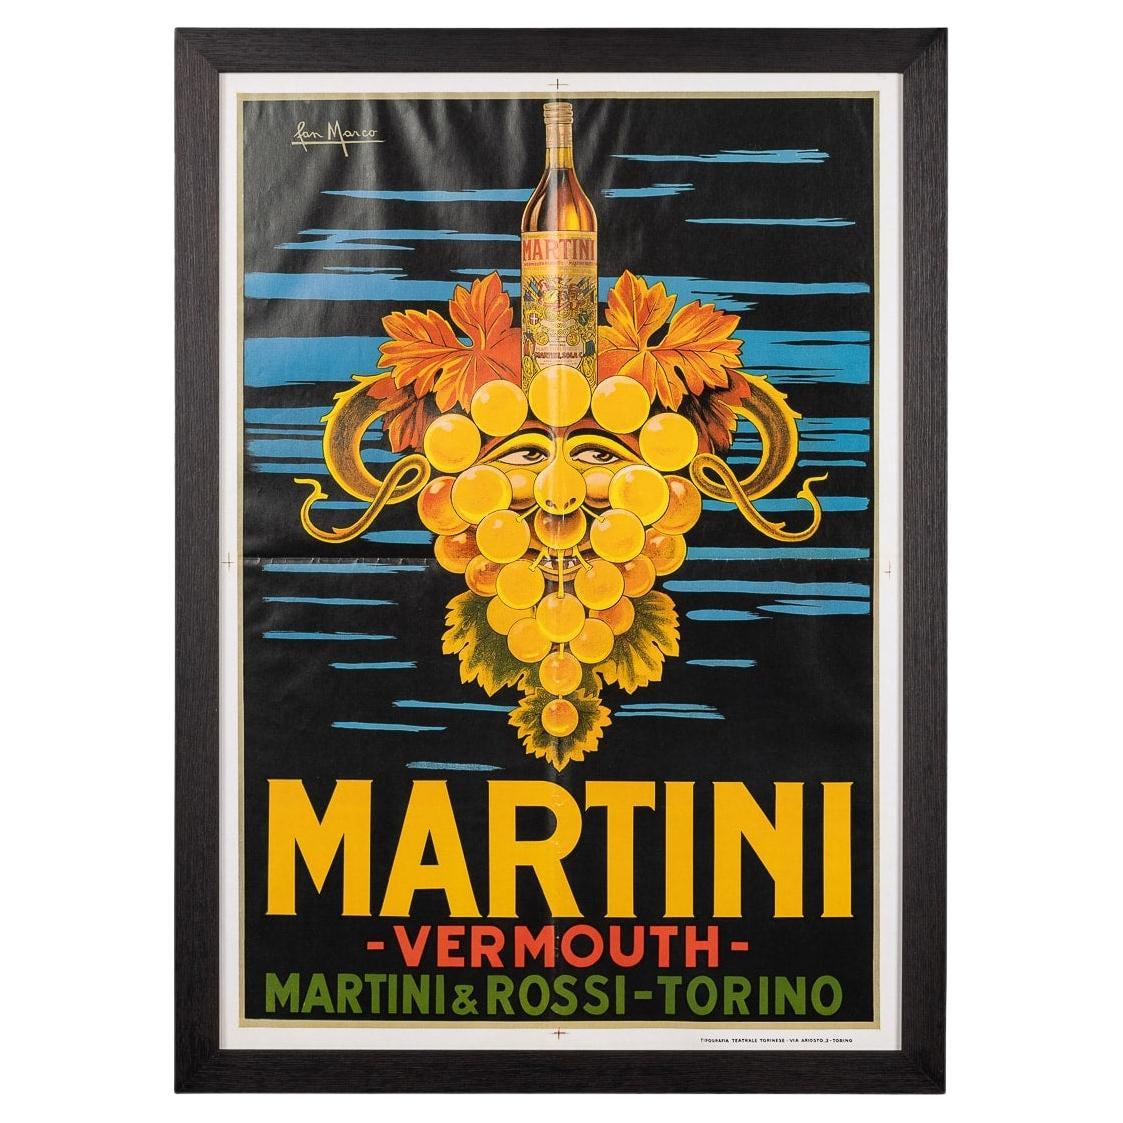 Affiche publicitaire encadrée pour Martini, Italie, datant d'environ 1970